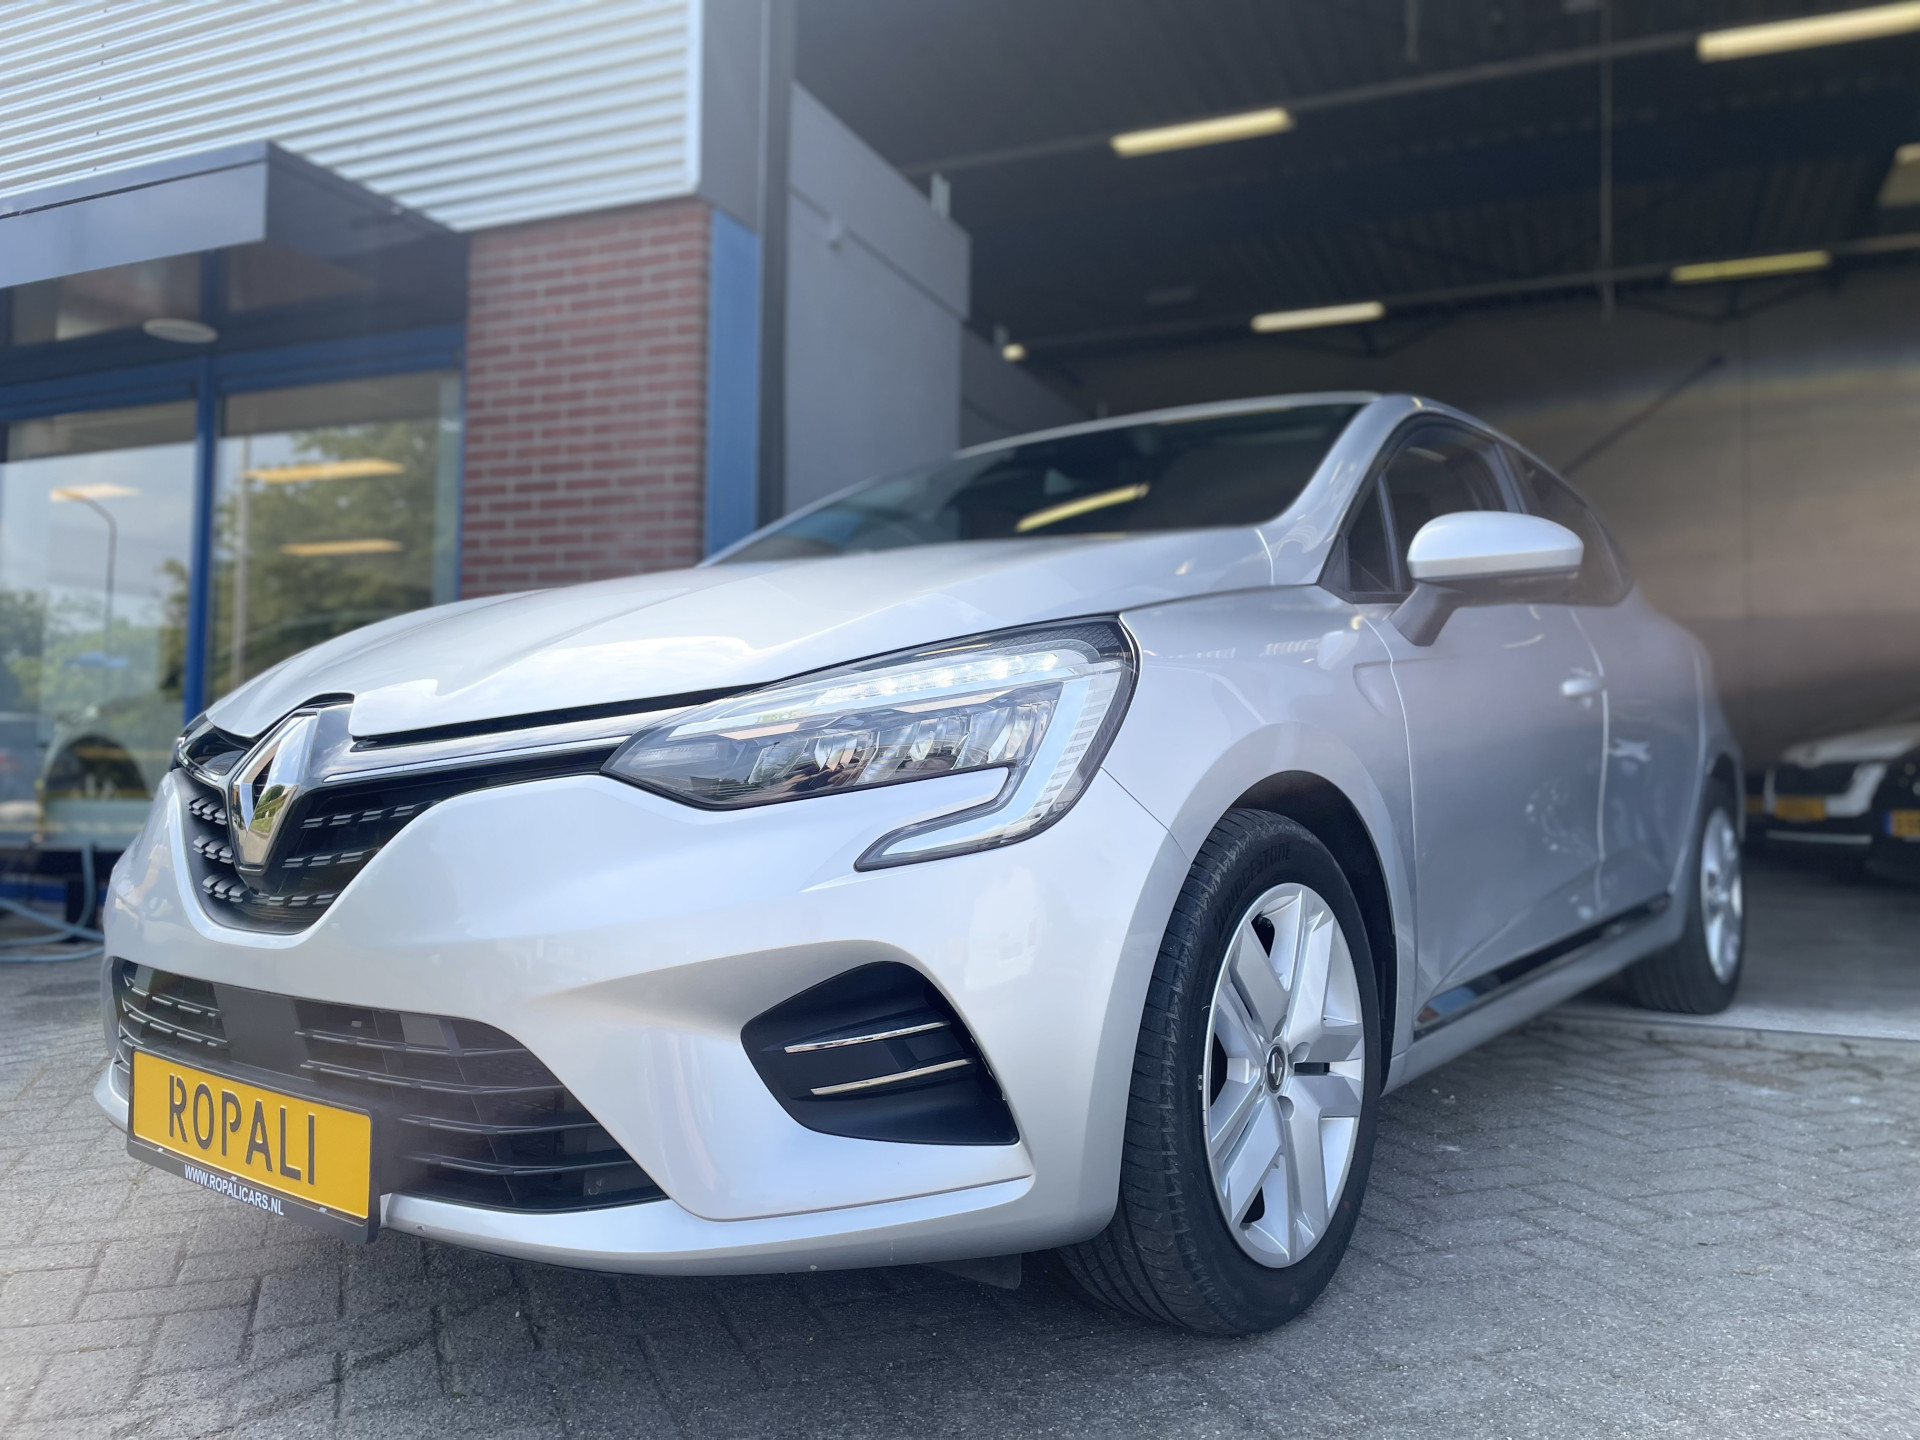 Renault-Clio-1.6 E-Tech Hybrid 140 Intens-ropalicars.nl